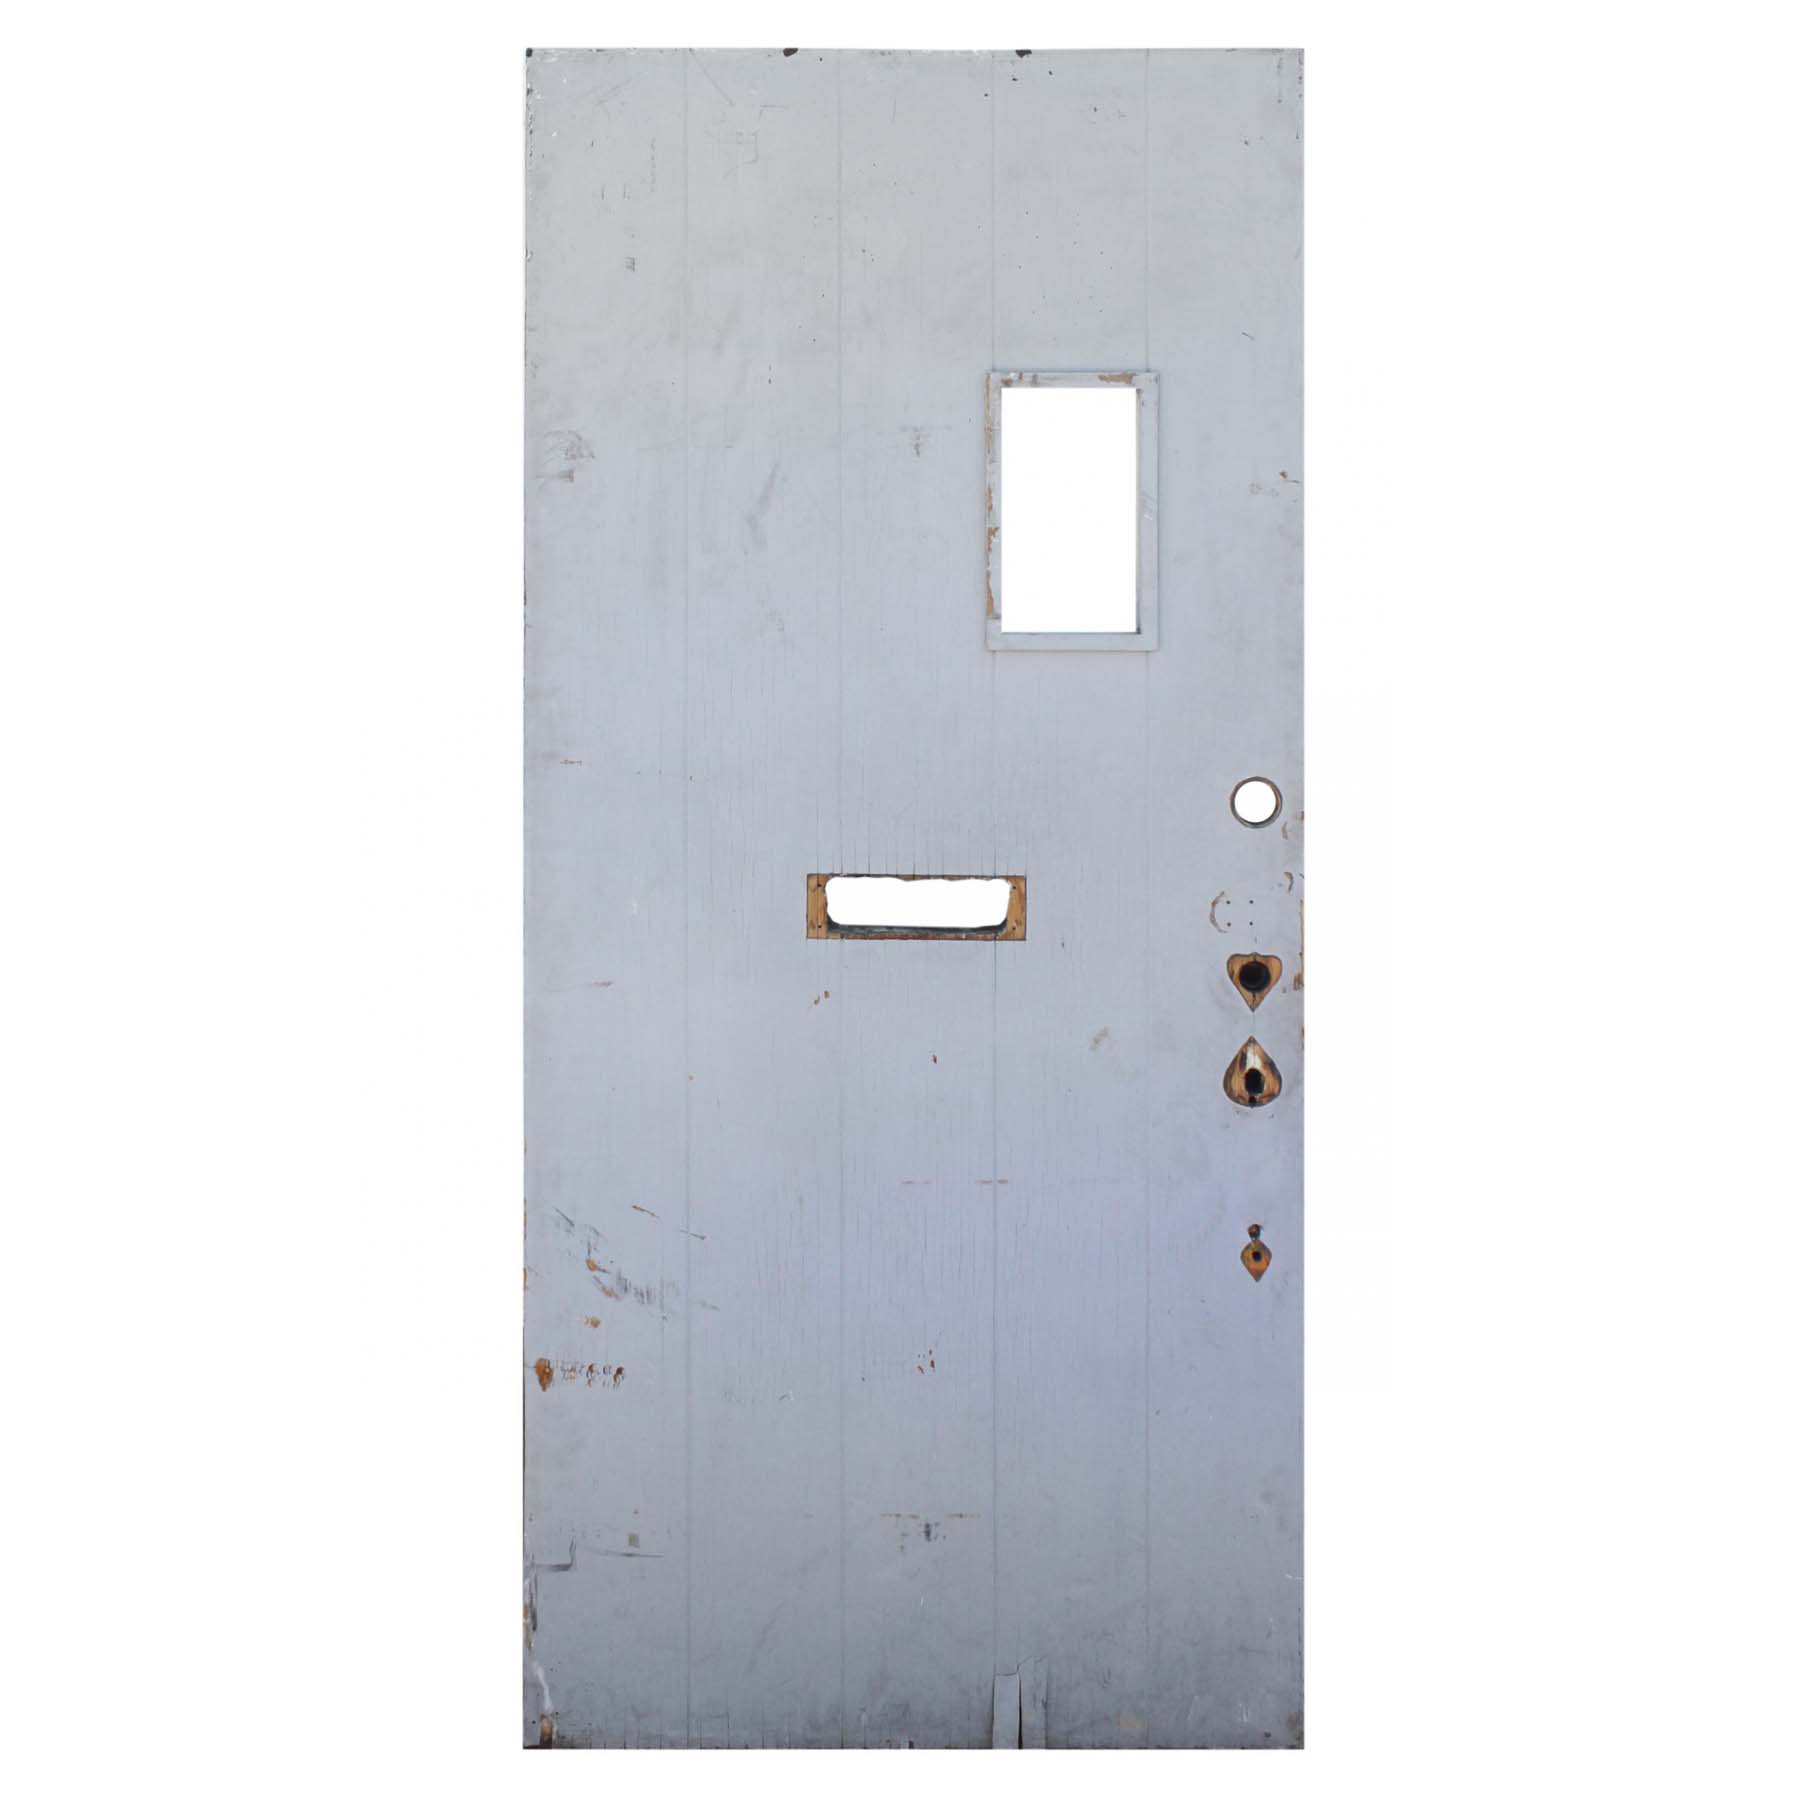 Salvaged 36" Exterior Plank Door with Window-0